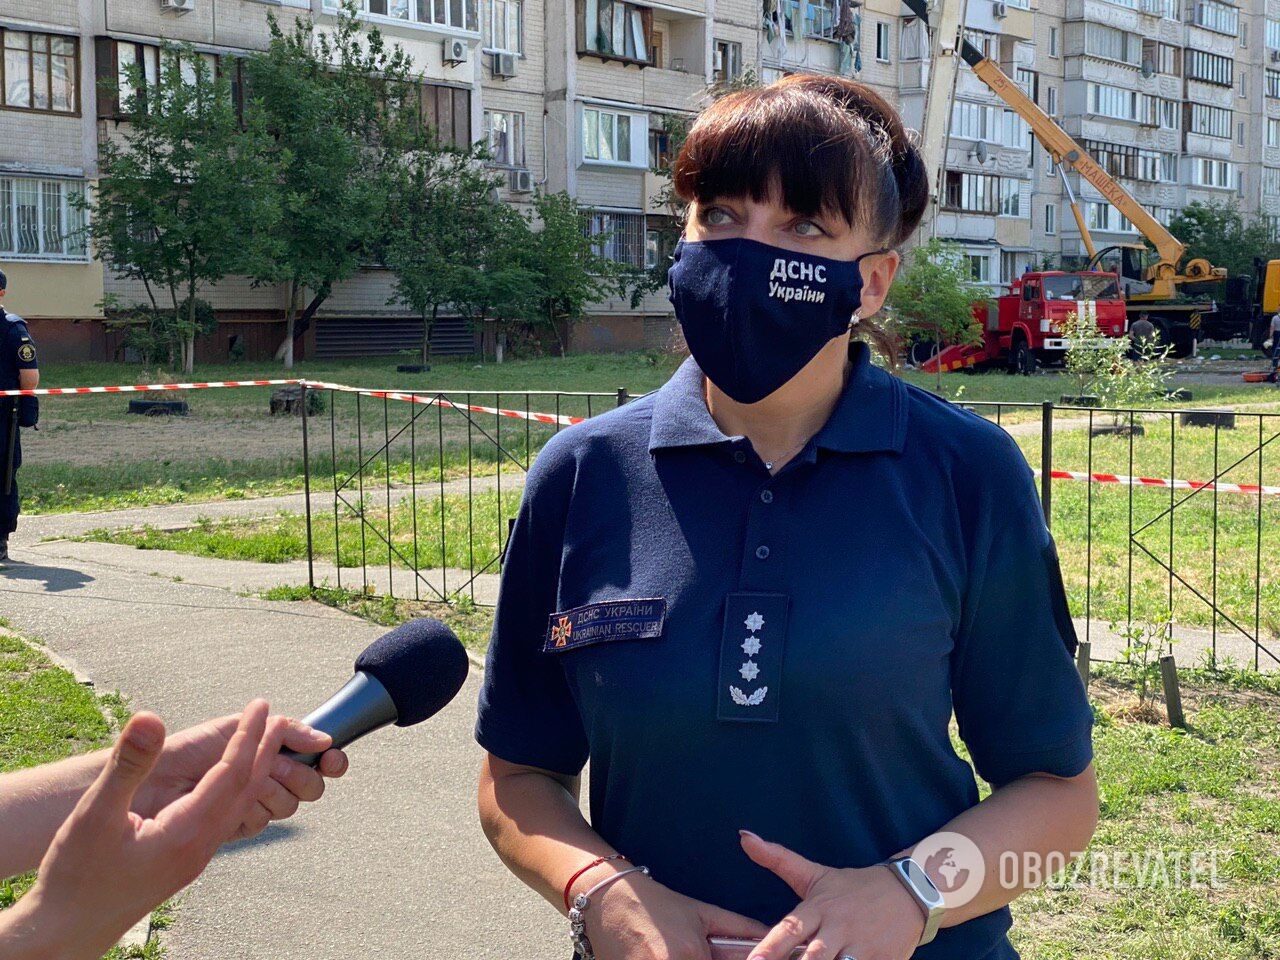 Пресс-секретарь ГУ ГСЧС Украины в городе Киеве Светлана Водолага дала комментарий о взрыве дома в столице